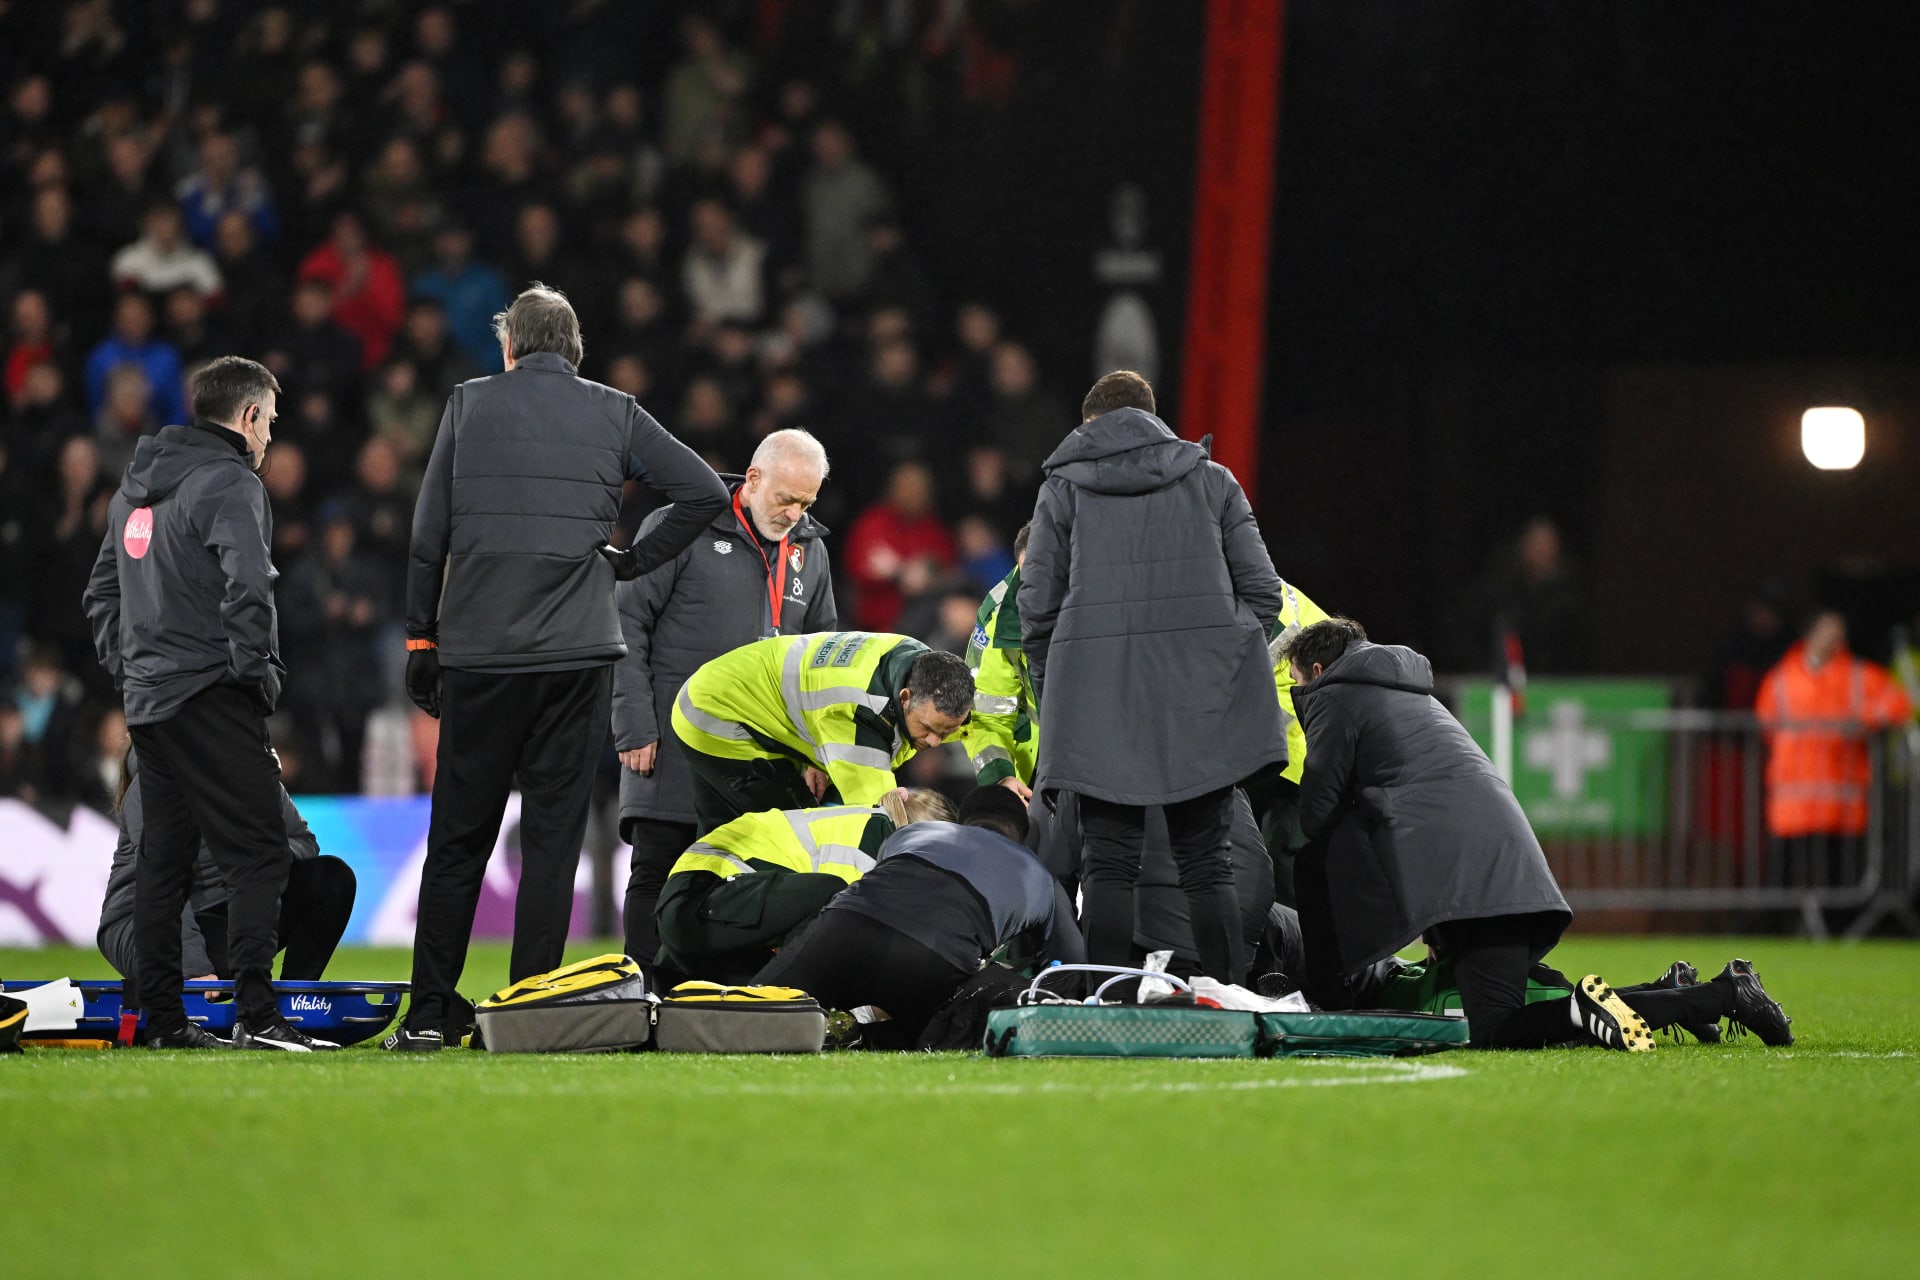 سقط اللاعب فجأةً على الأرض.. إصابة "خطرة" تتسبب بإيقاف مباراة في الدوري الإنجليزي